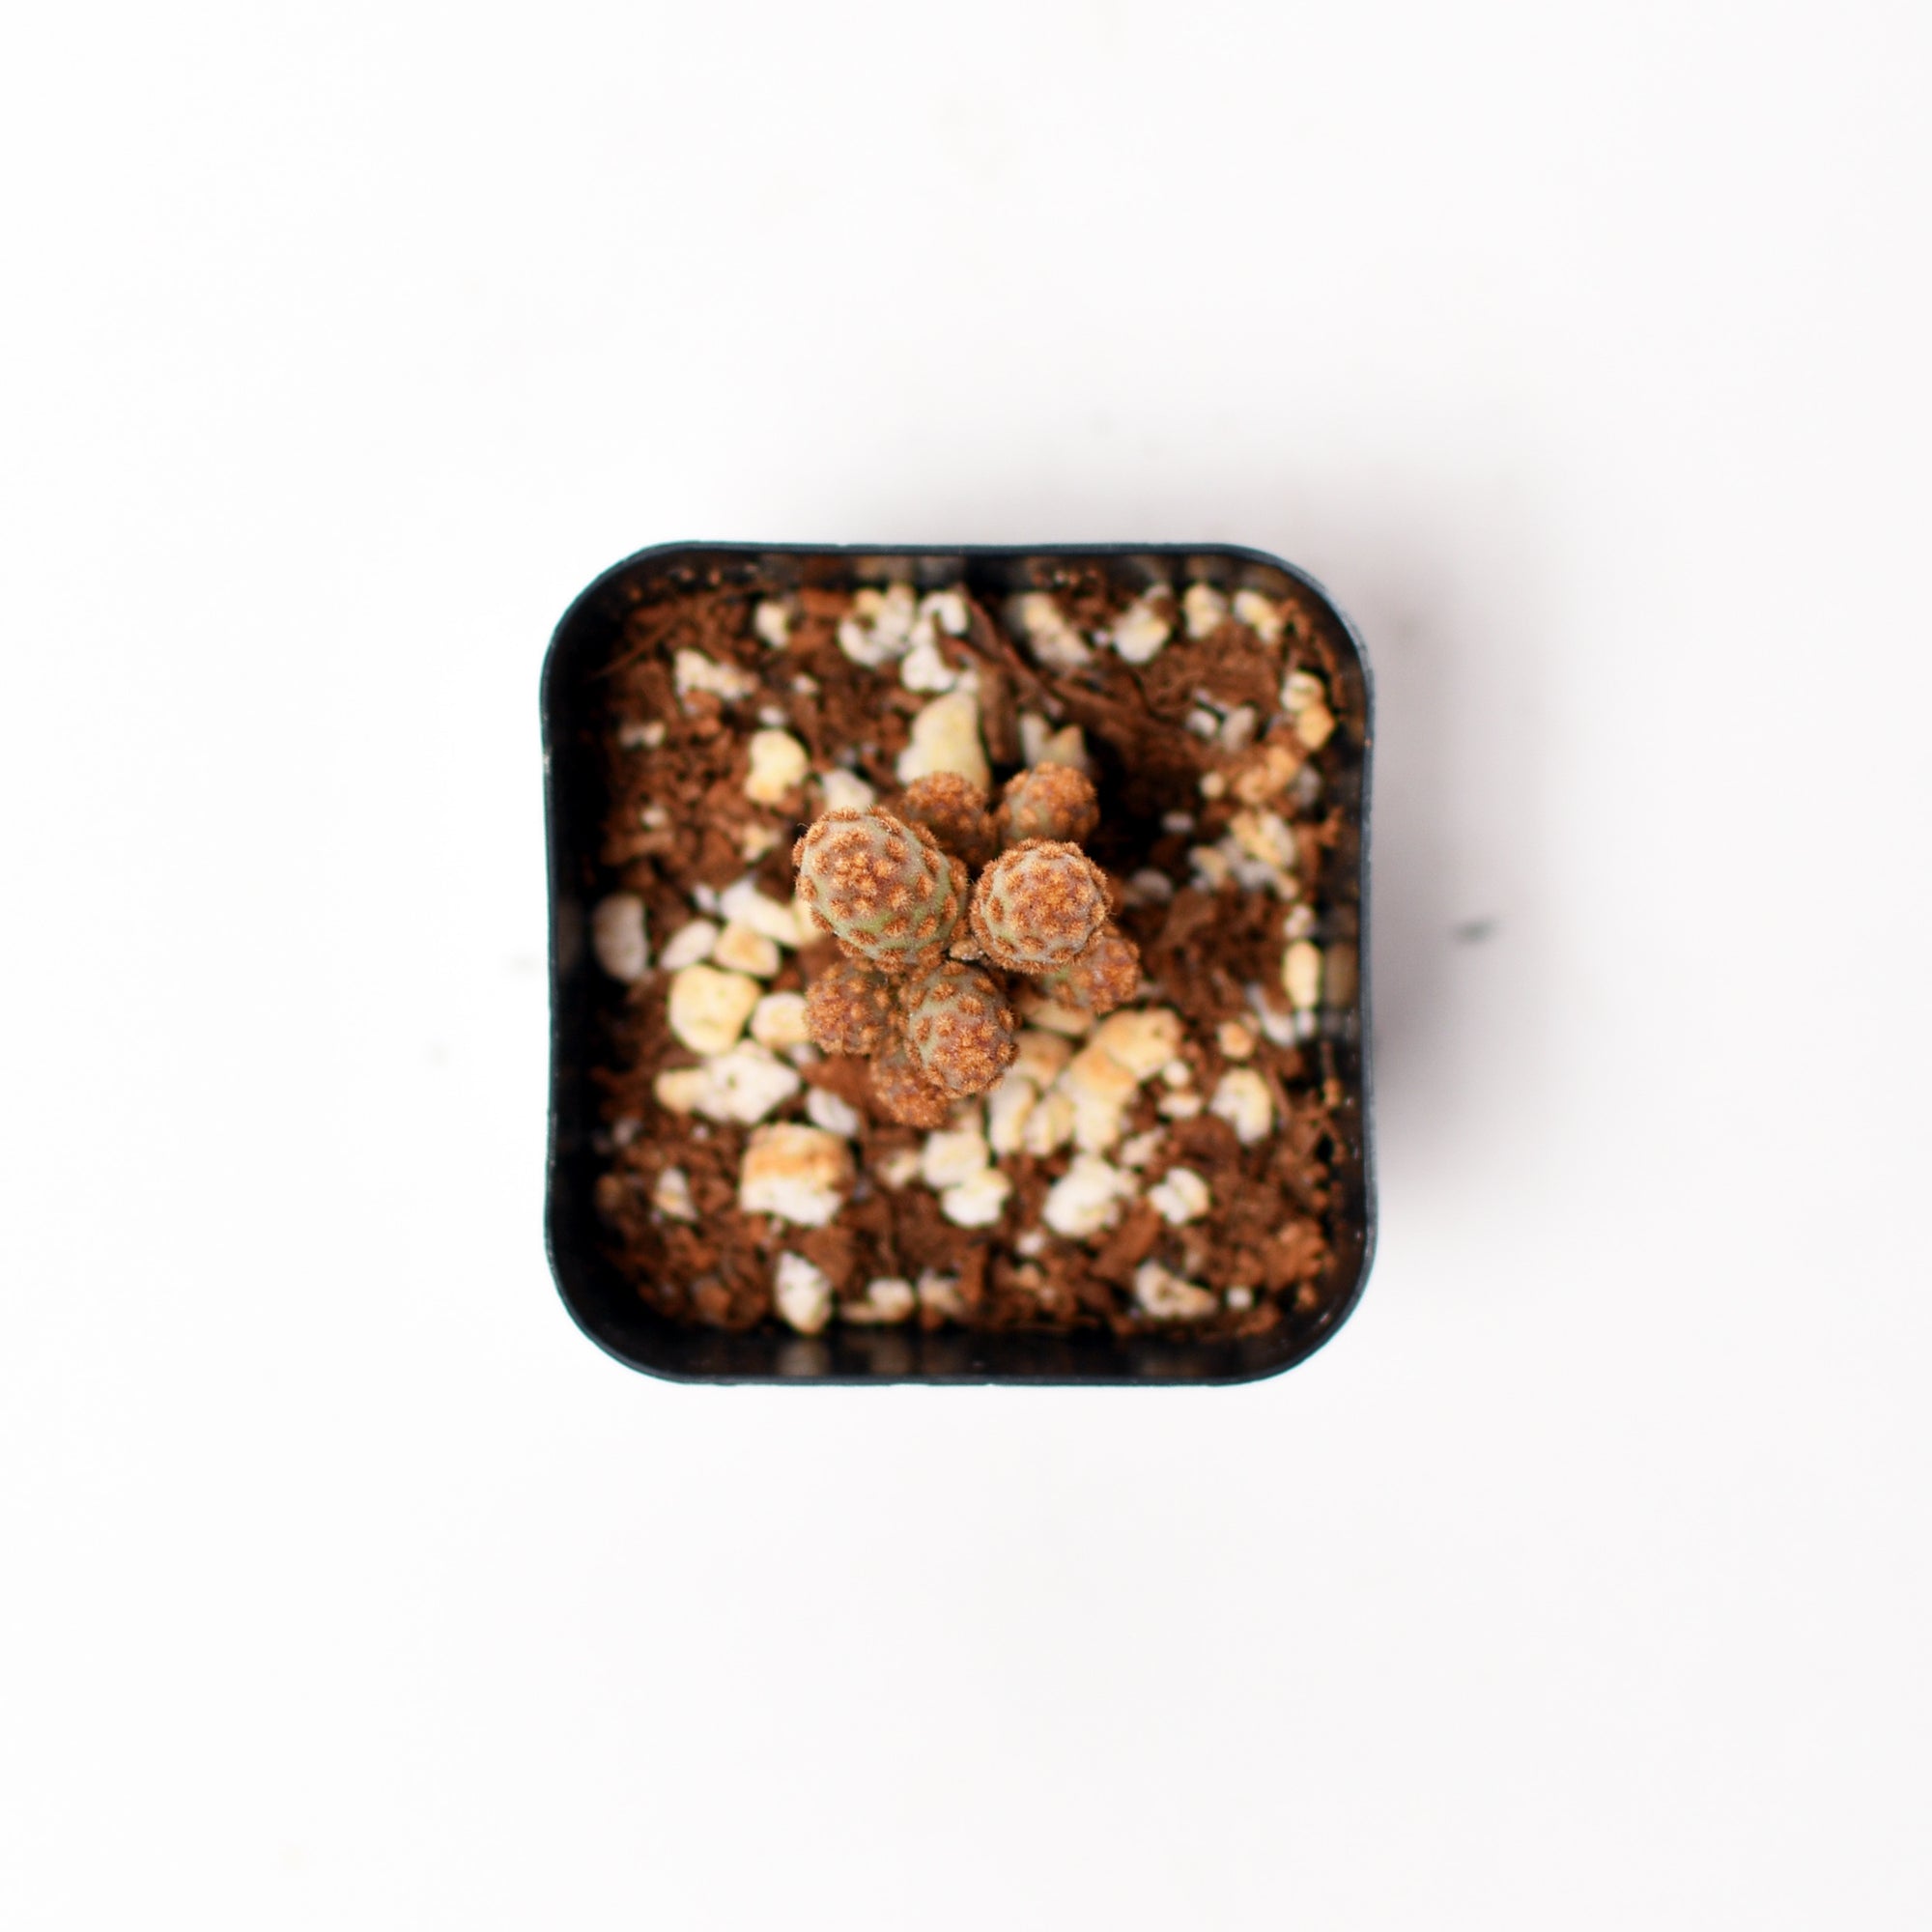 Mini Cinnamon Cactus - Opuntia Rufiada Minima